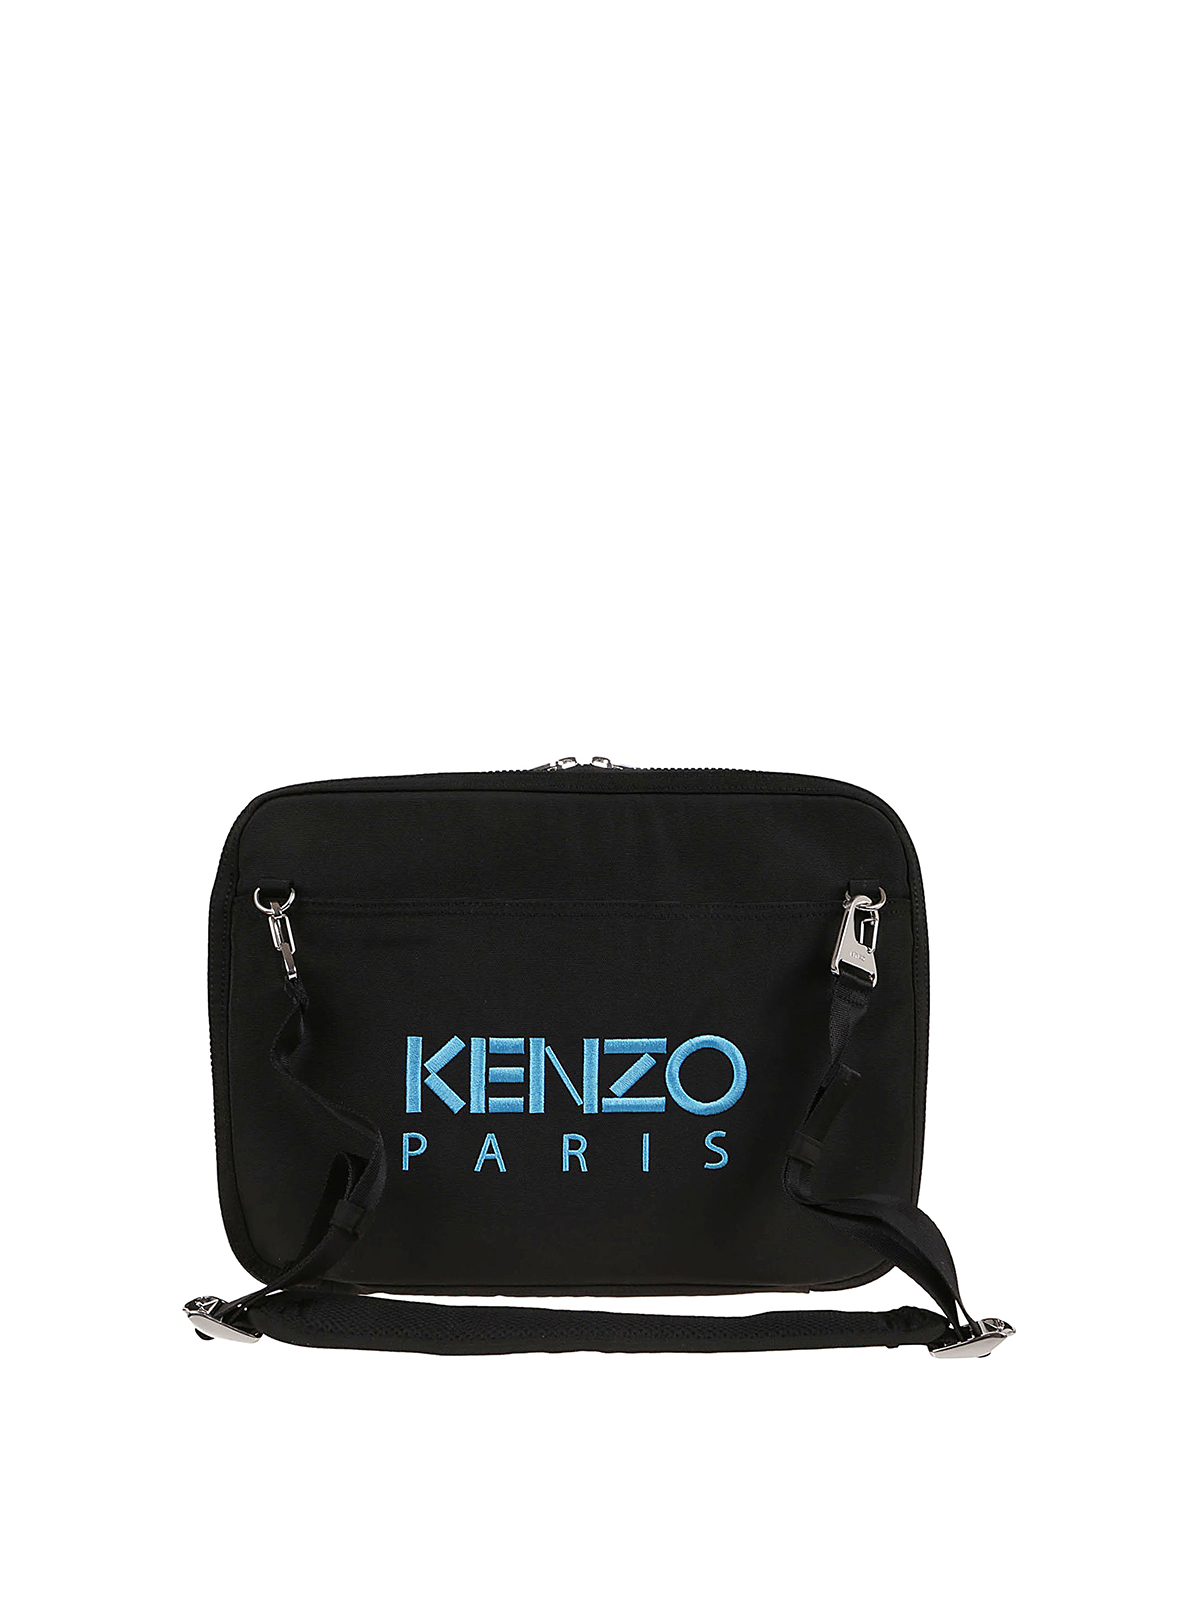 kenzo laptop bag